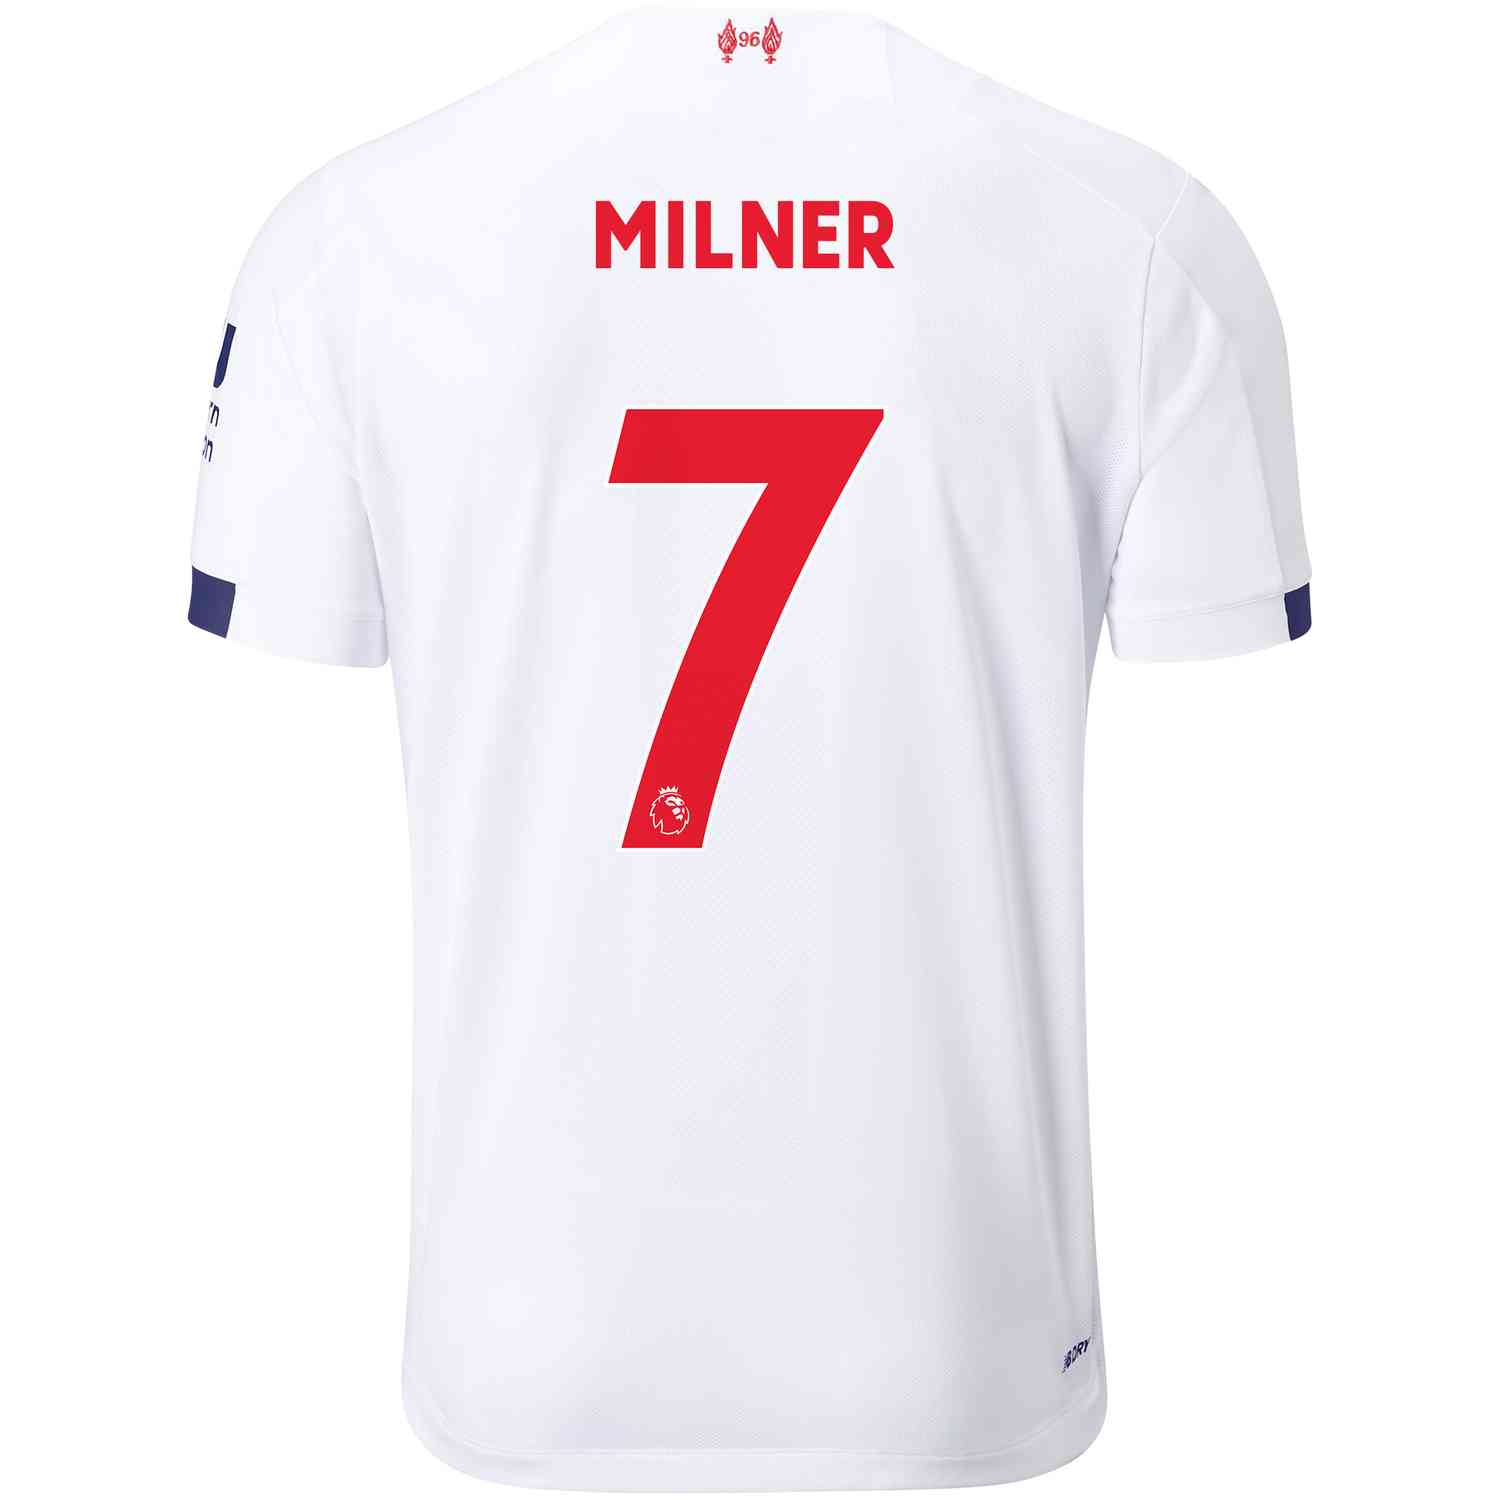 james milner signed shirt